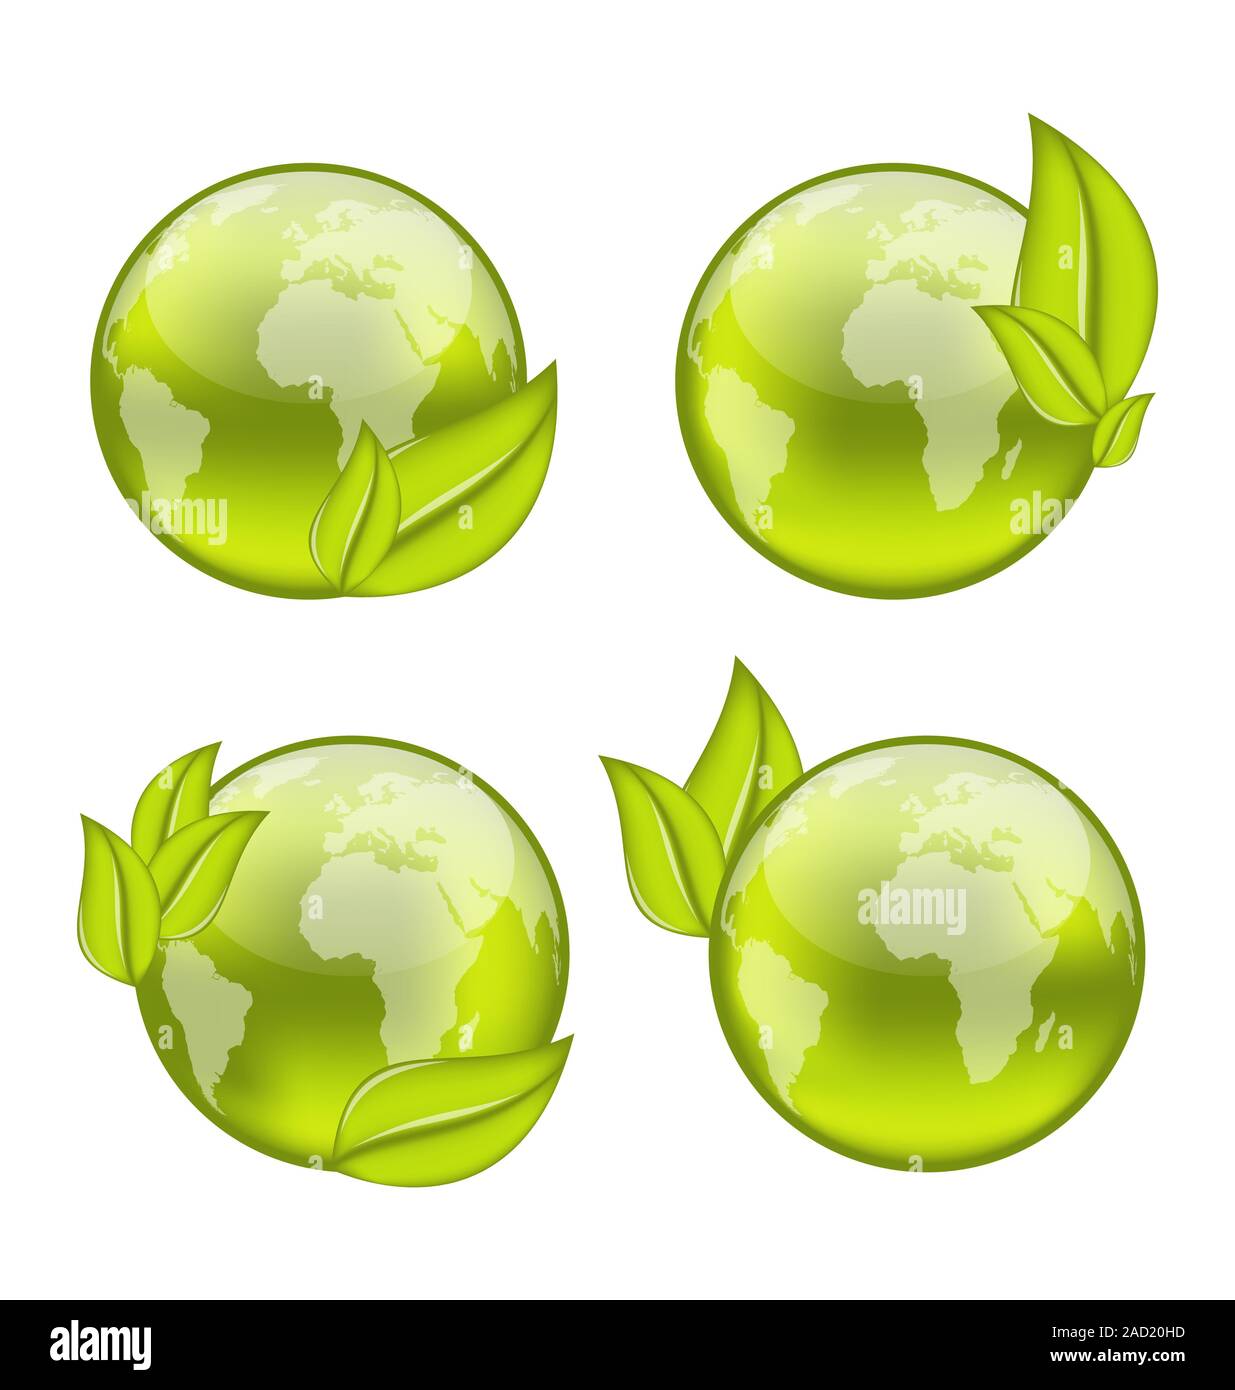 Définir l'icône monde avec eco green feuilles isolées sur fond blanc Banque D'Images